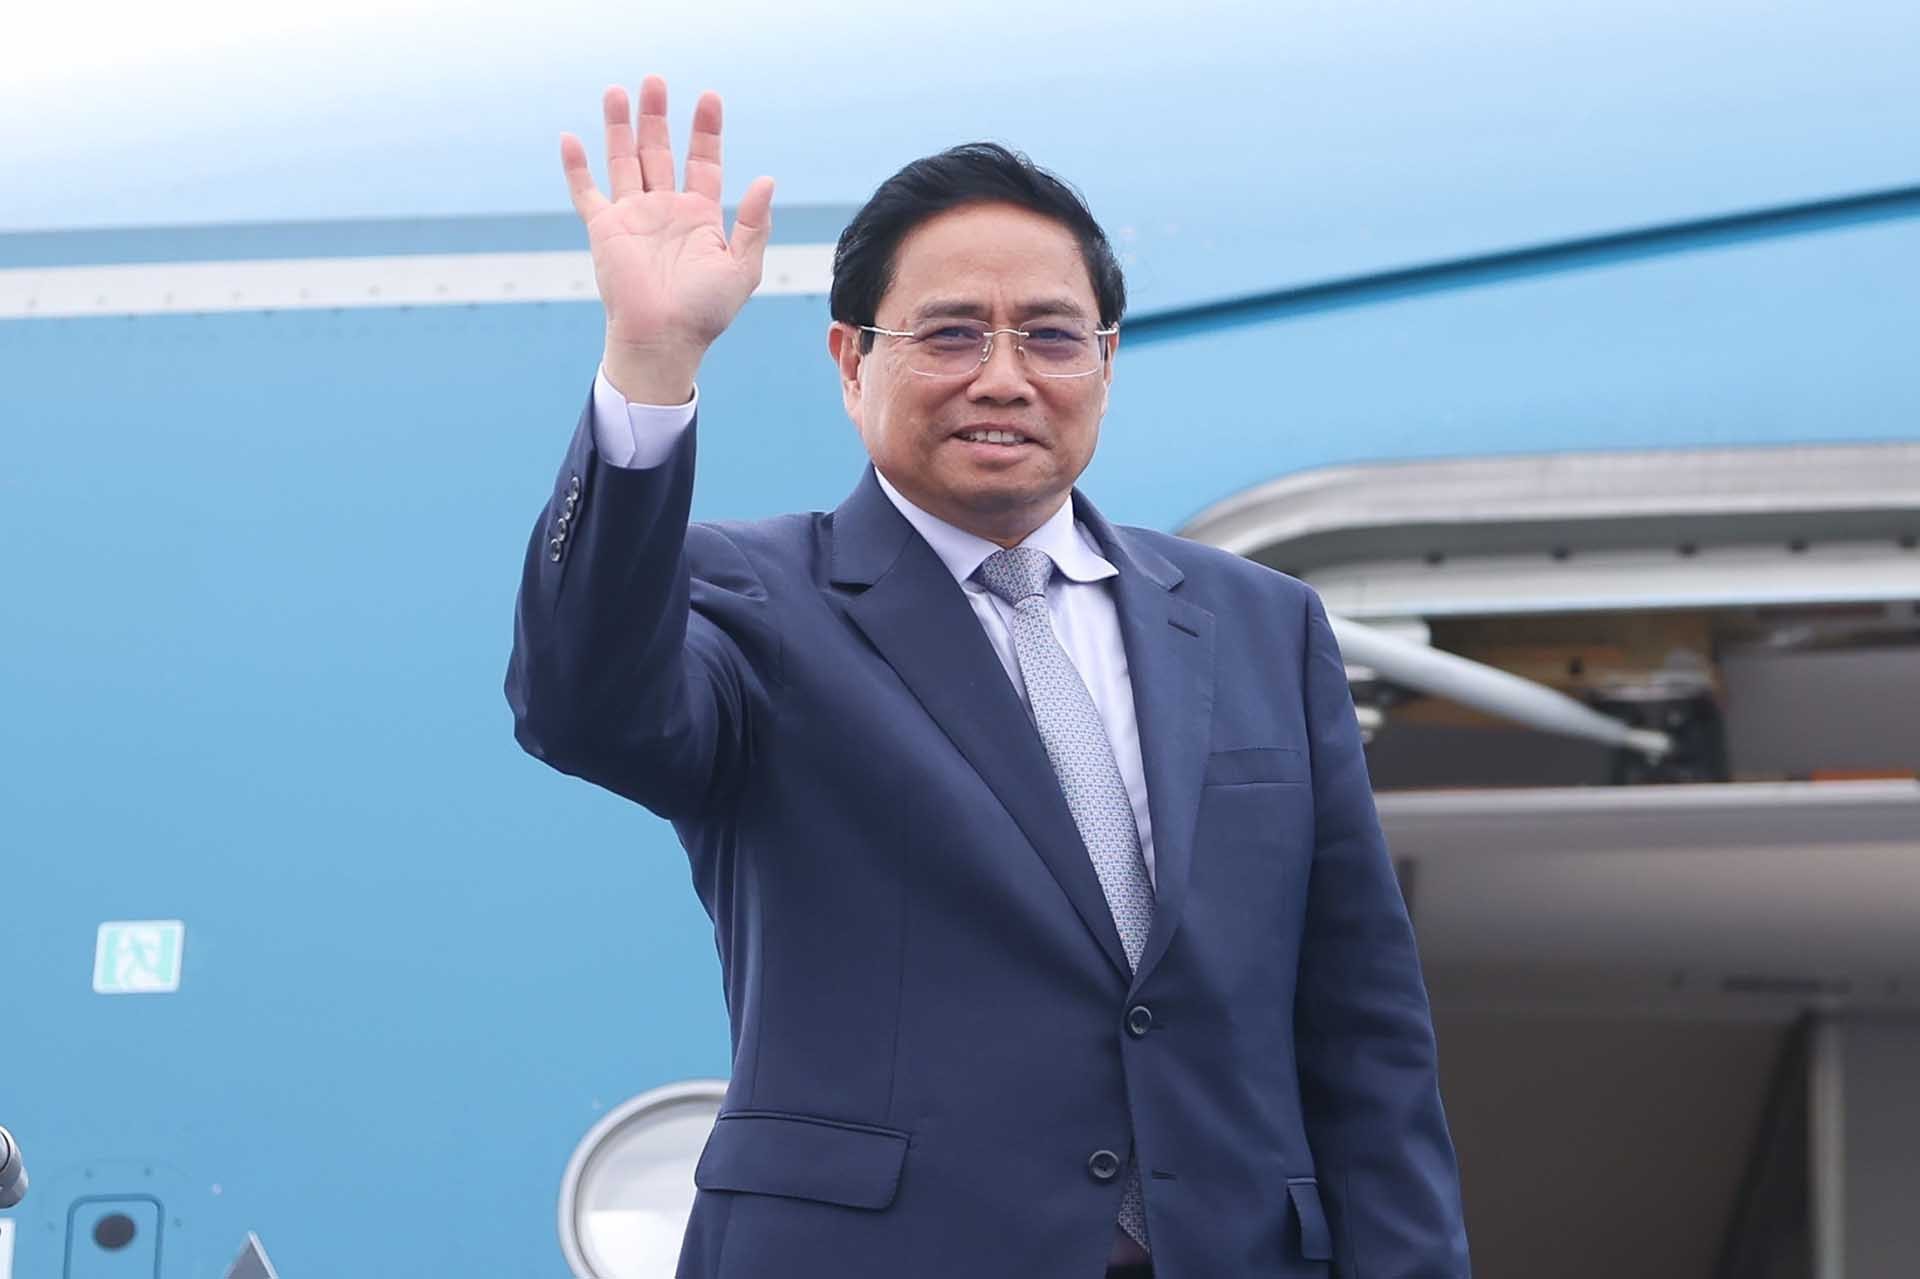 Thủ tướng Phạm Minh Chính lên đường tham dự Hội nghị cấp cao Ủy hội sông Mekong quốc tế lần thứ 4 tại Lào